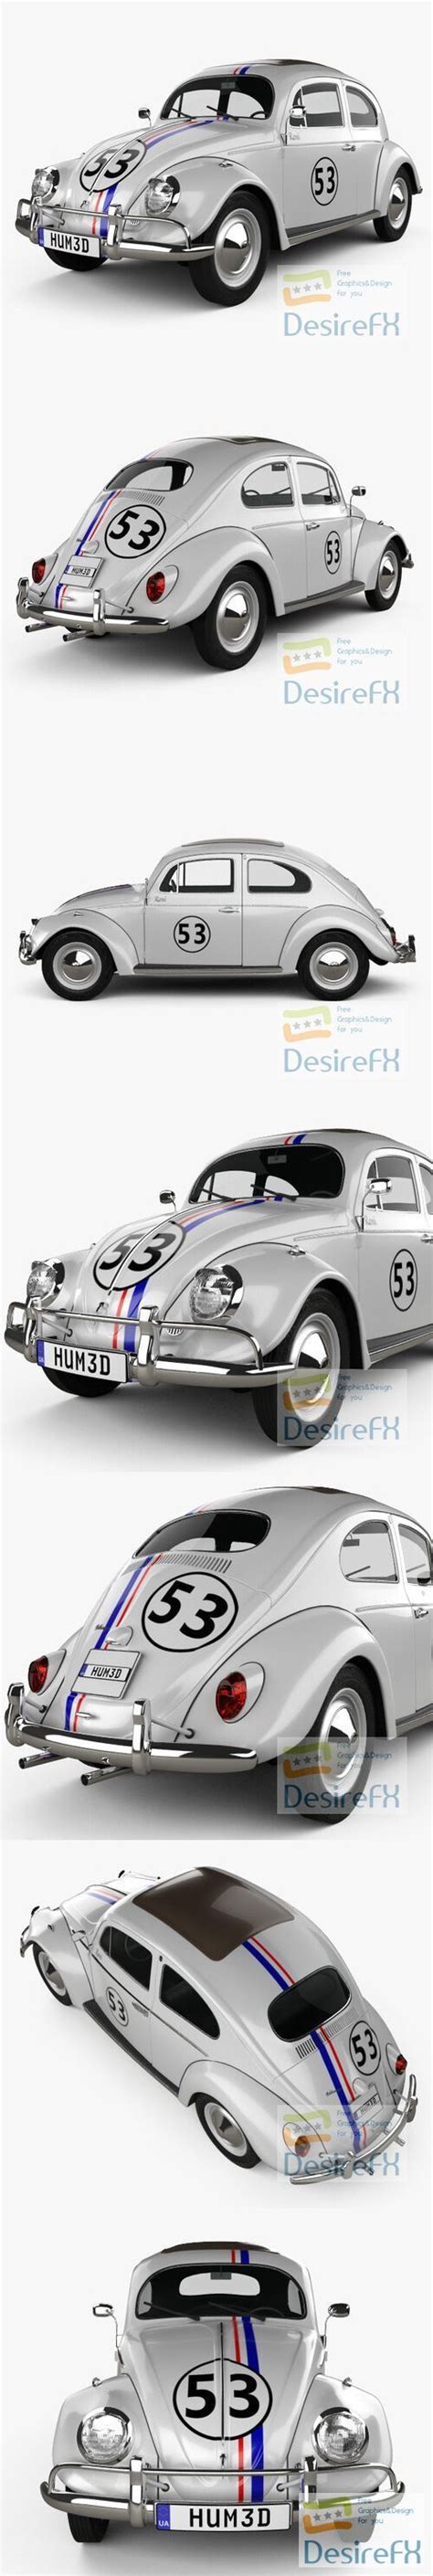 Download Volkswagen Beetle Herbie The Love Bug 1963 3d Model Desirefx